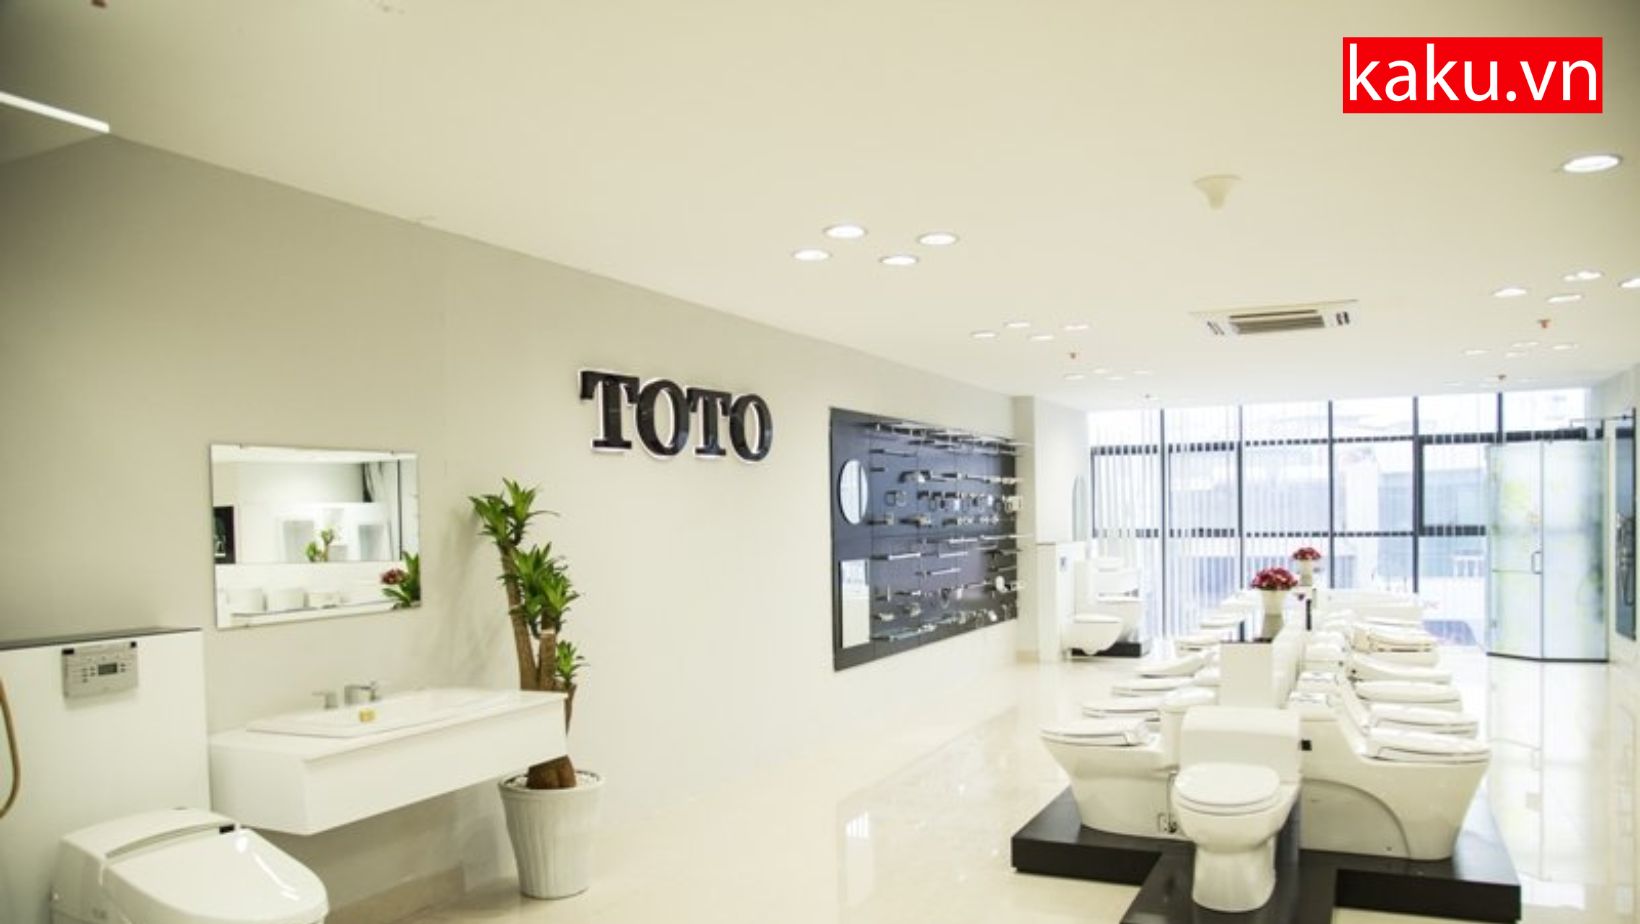 Tại sao nên chọn thiết bị vệ sinh Toto